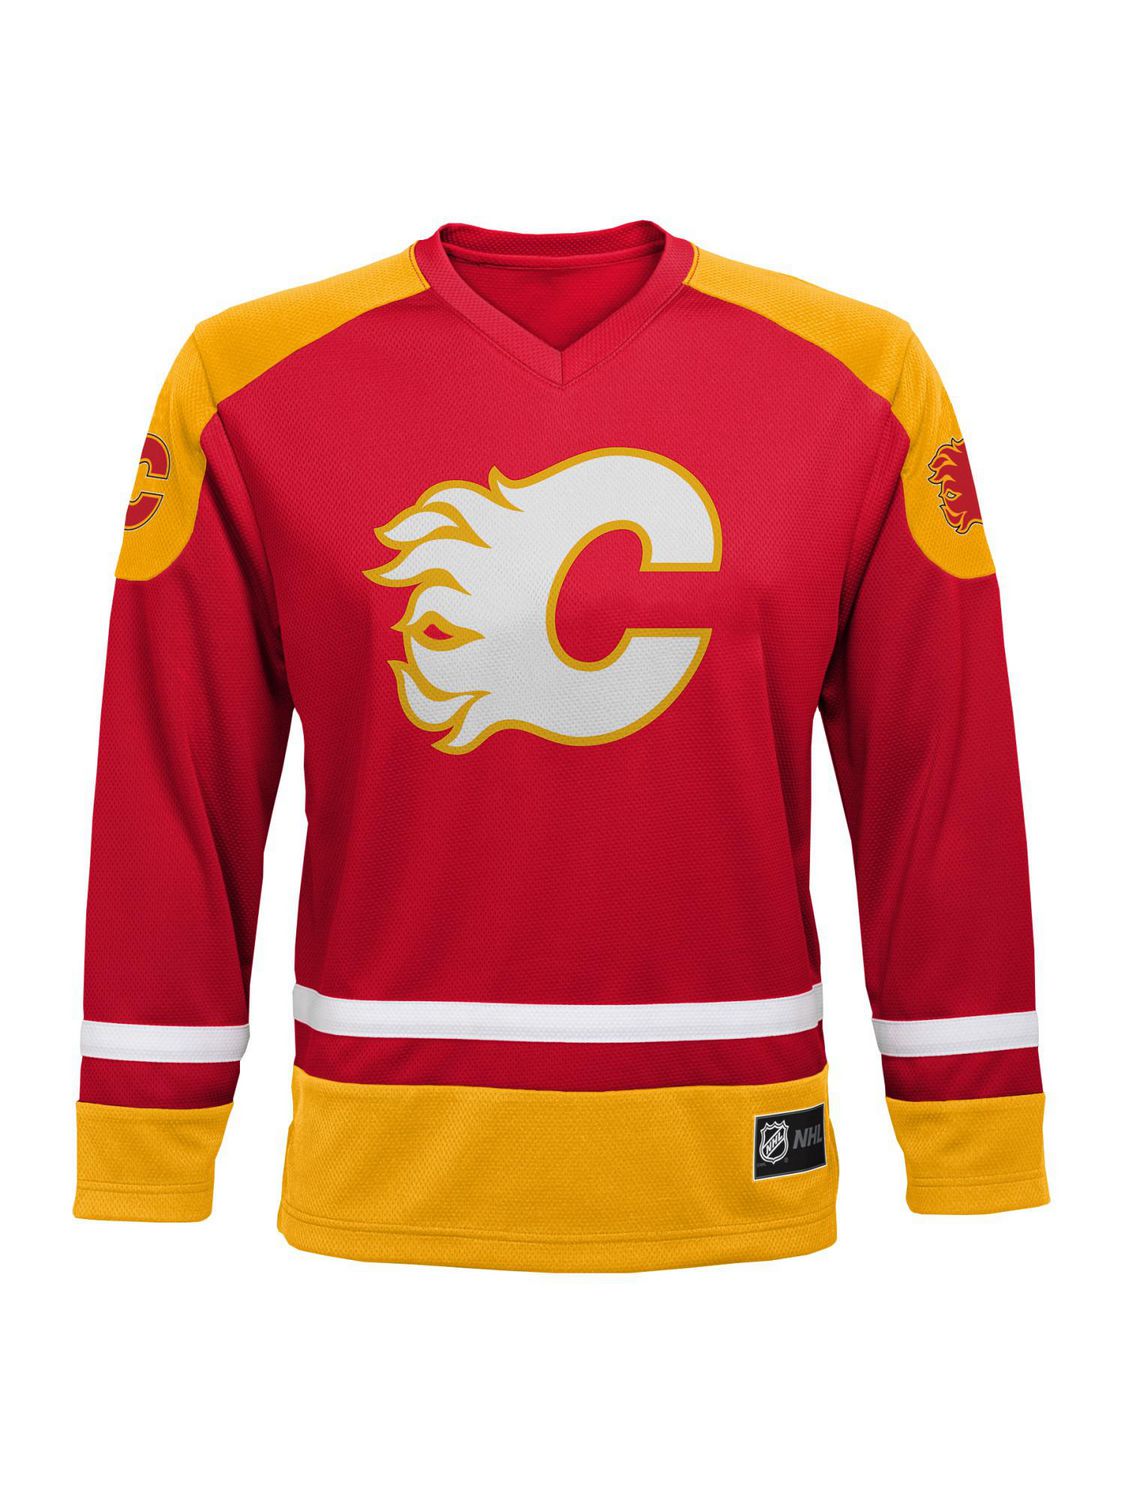 NHL Edmonton Oilers Mens Long Sleeve Deluxe Fans Jersey Sweater